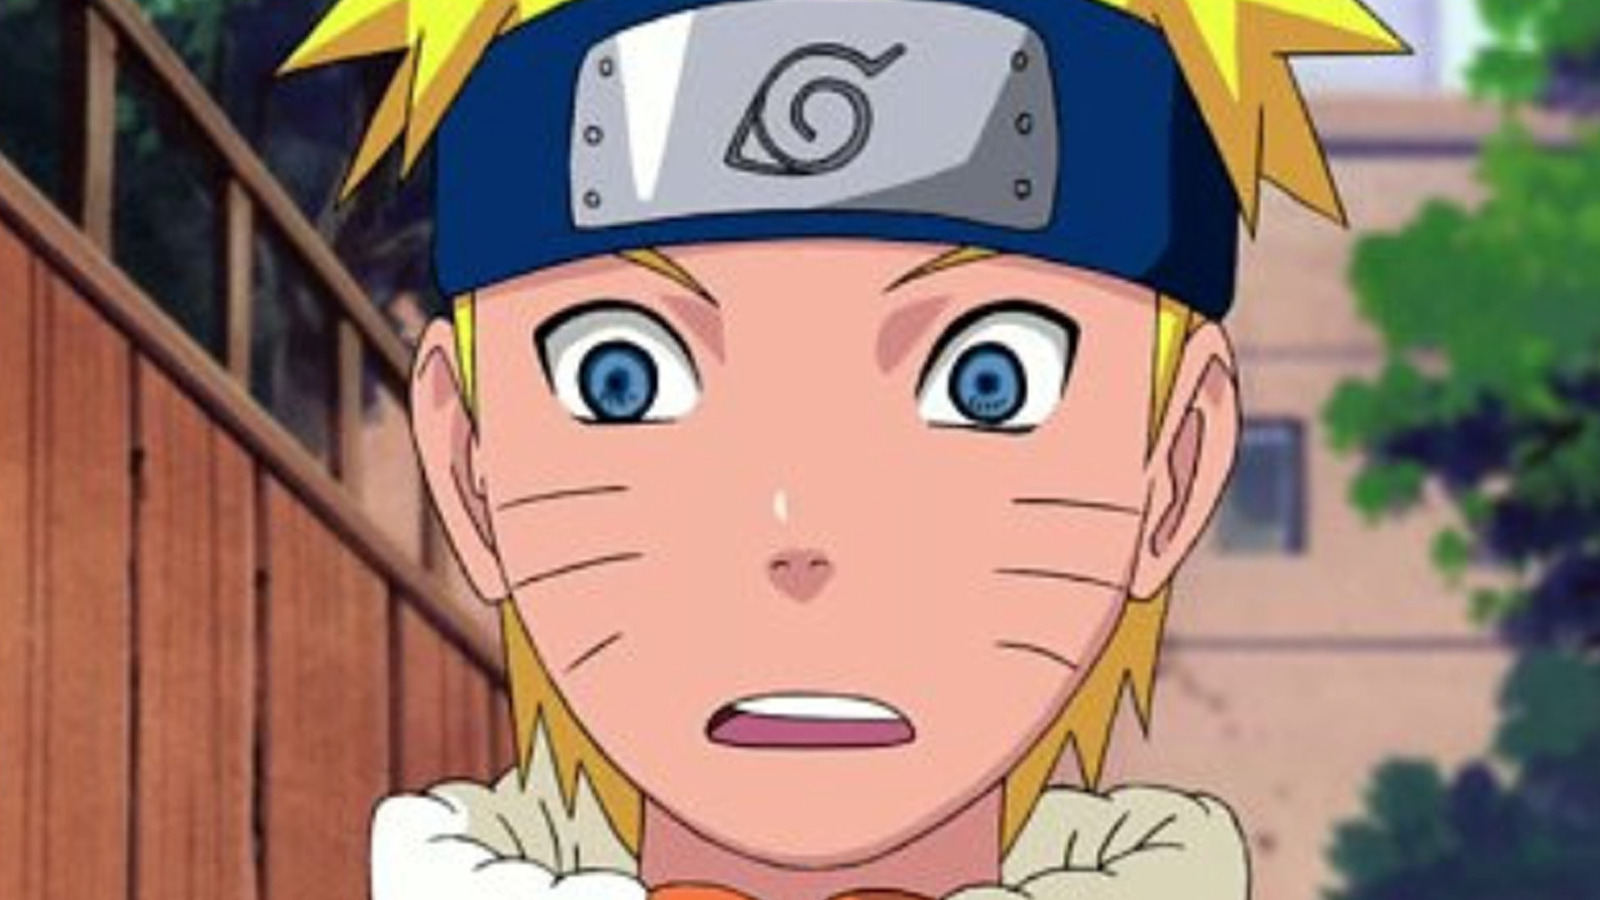 Netflix: ¿Cuántas temporadas tiene Naruto en la plataforma?